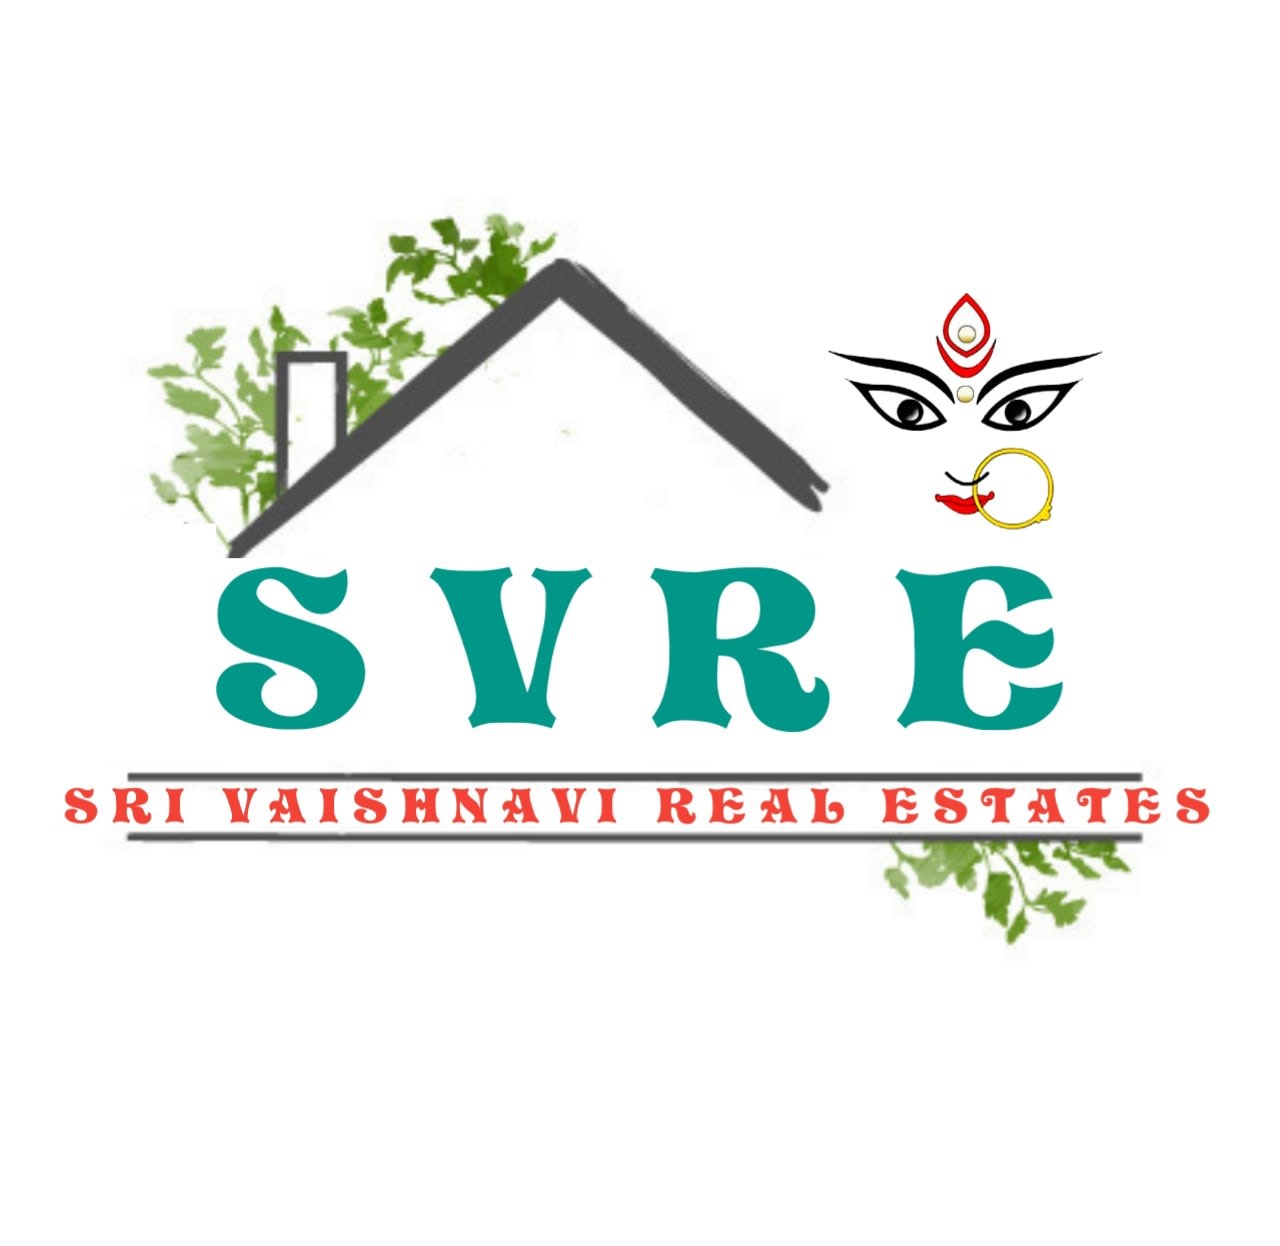 Sri Vaishnavi Real Estates